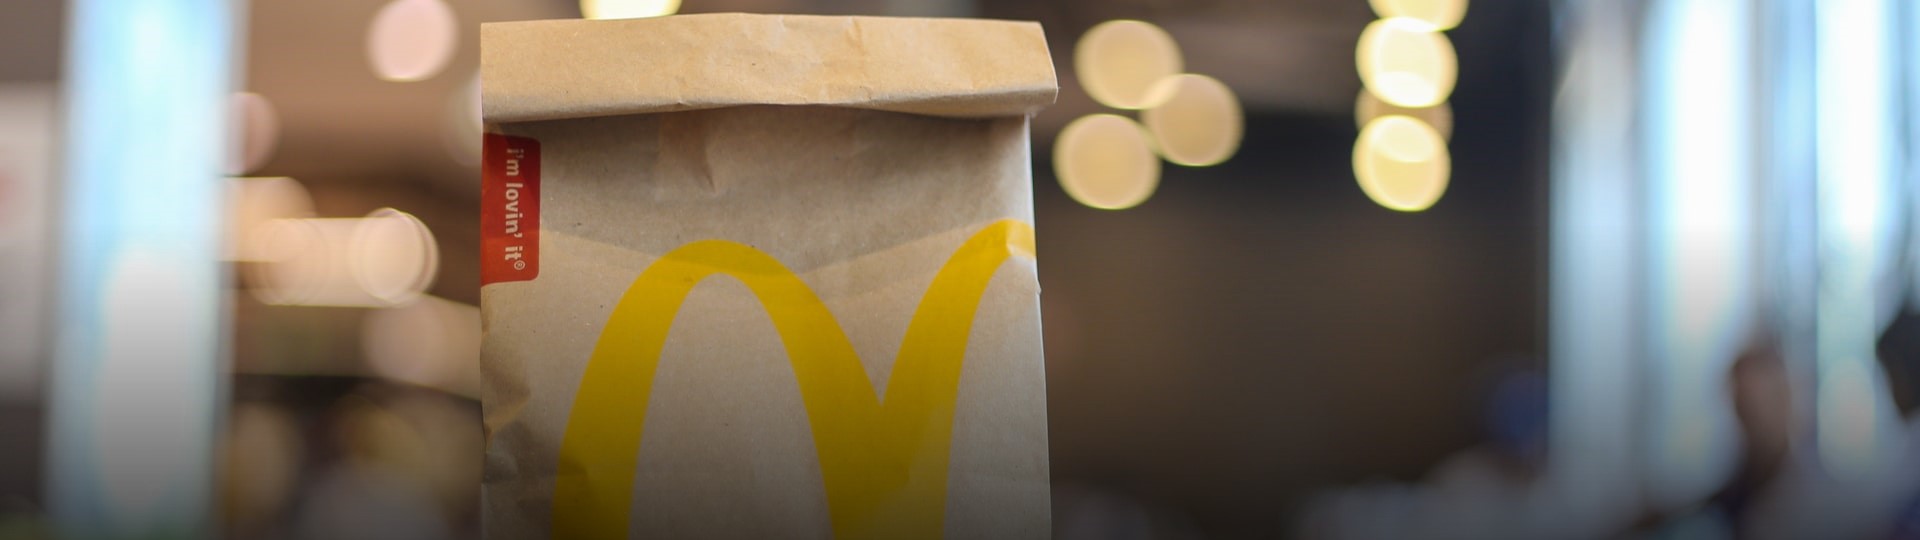 McDonald's prudce zvýšil čtvrtletní zisk, tržby překonaly očekávání analytiků